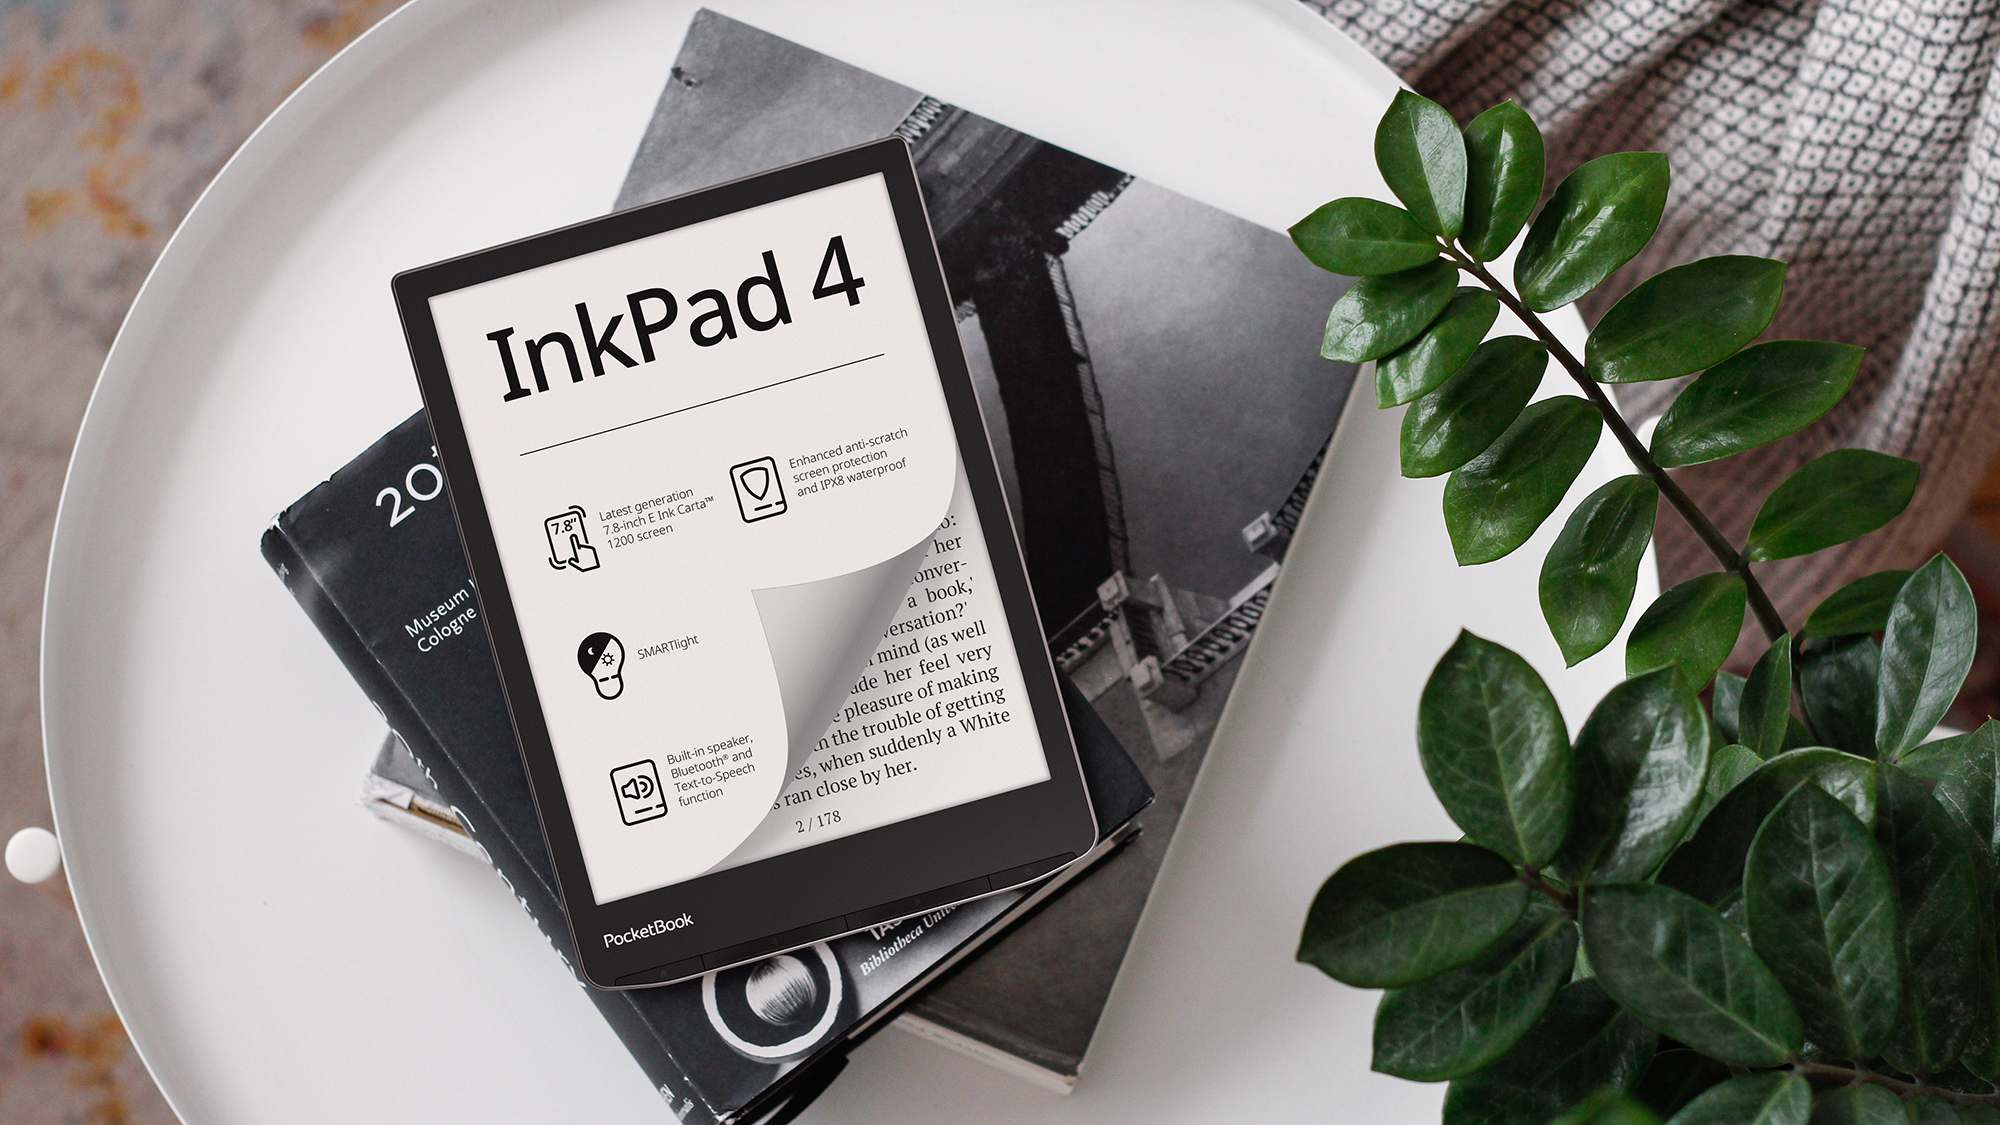 PocketBook анонсировала ридер InkPad 4 с подсветкой экрана, прослушиванием аудиокниг, защитой от воды и ценой 12 тыс. грн